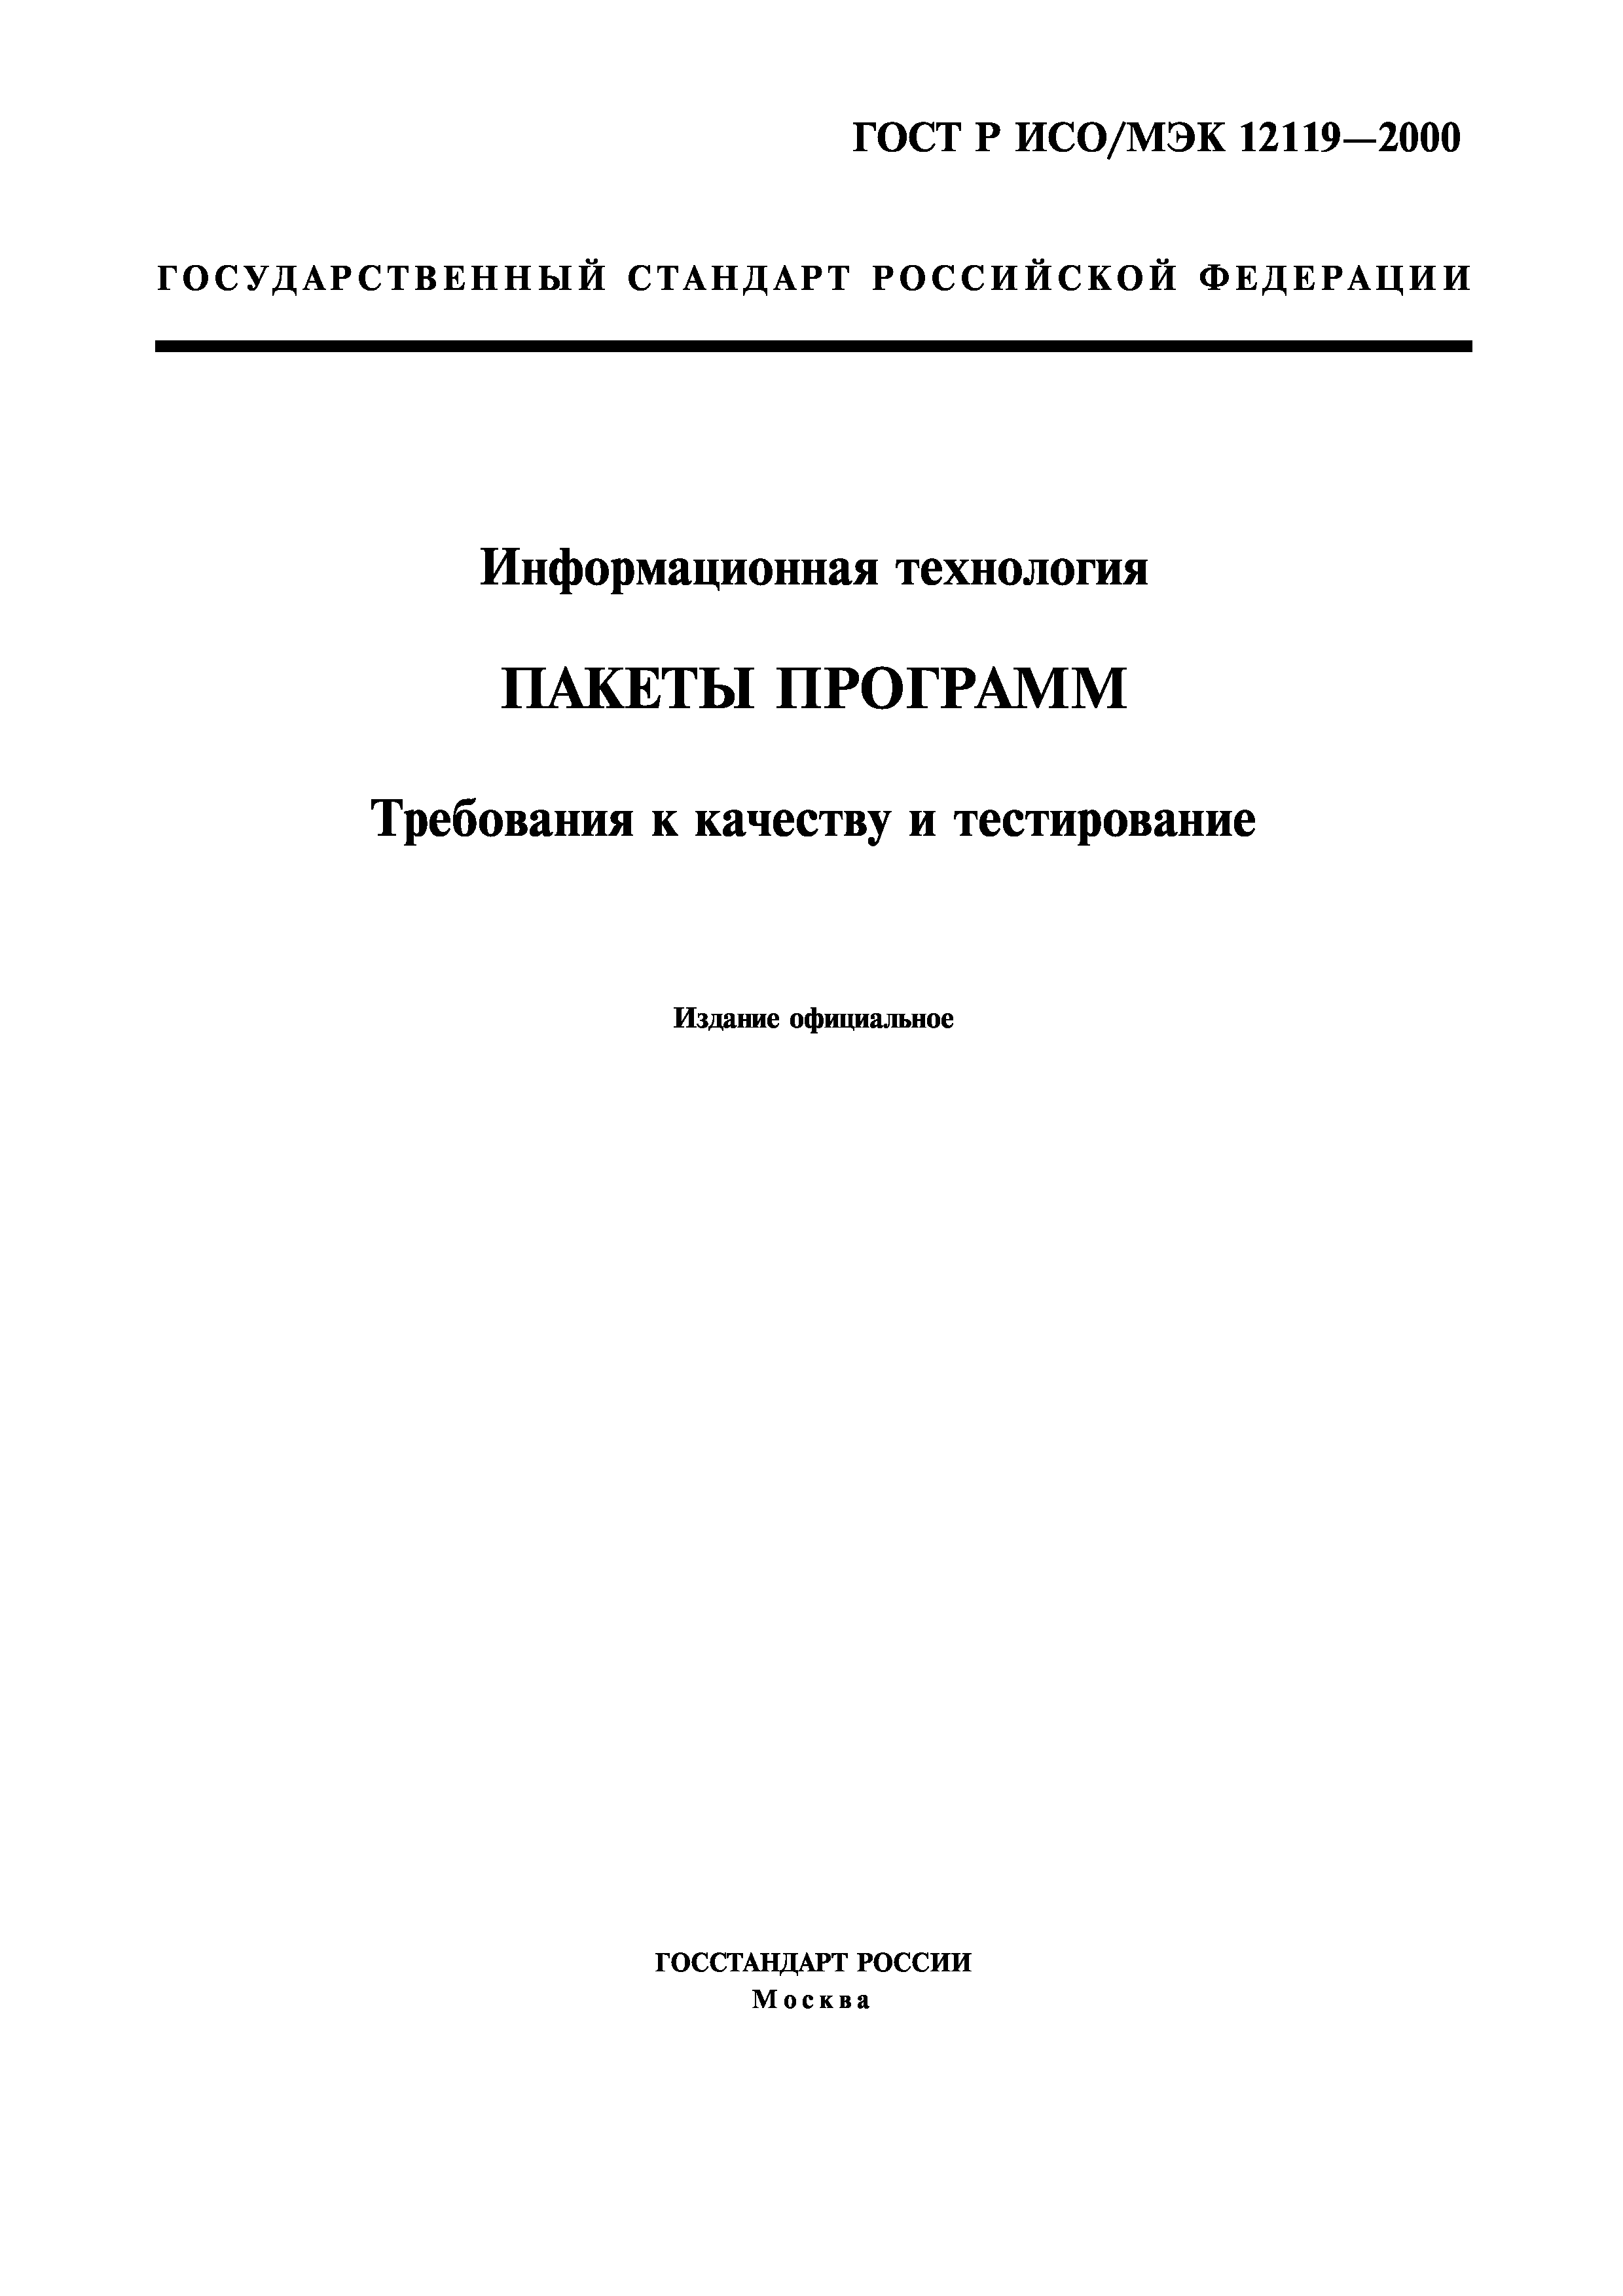 ГОСТ Р ИСО/МЭК 12119-2000